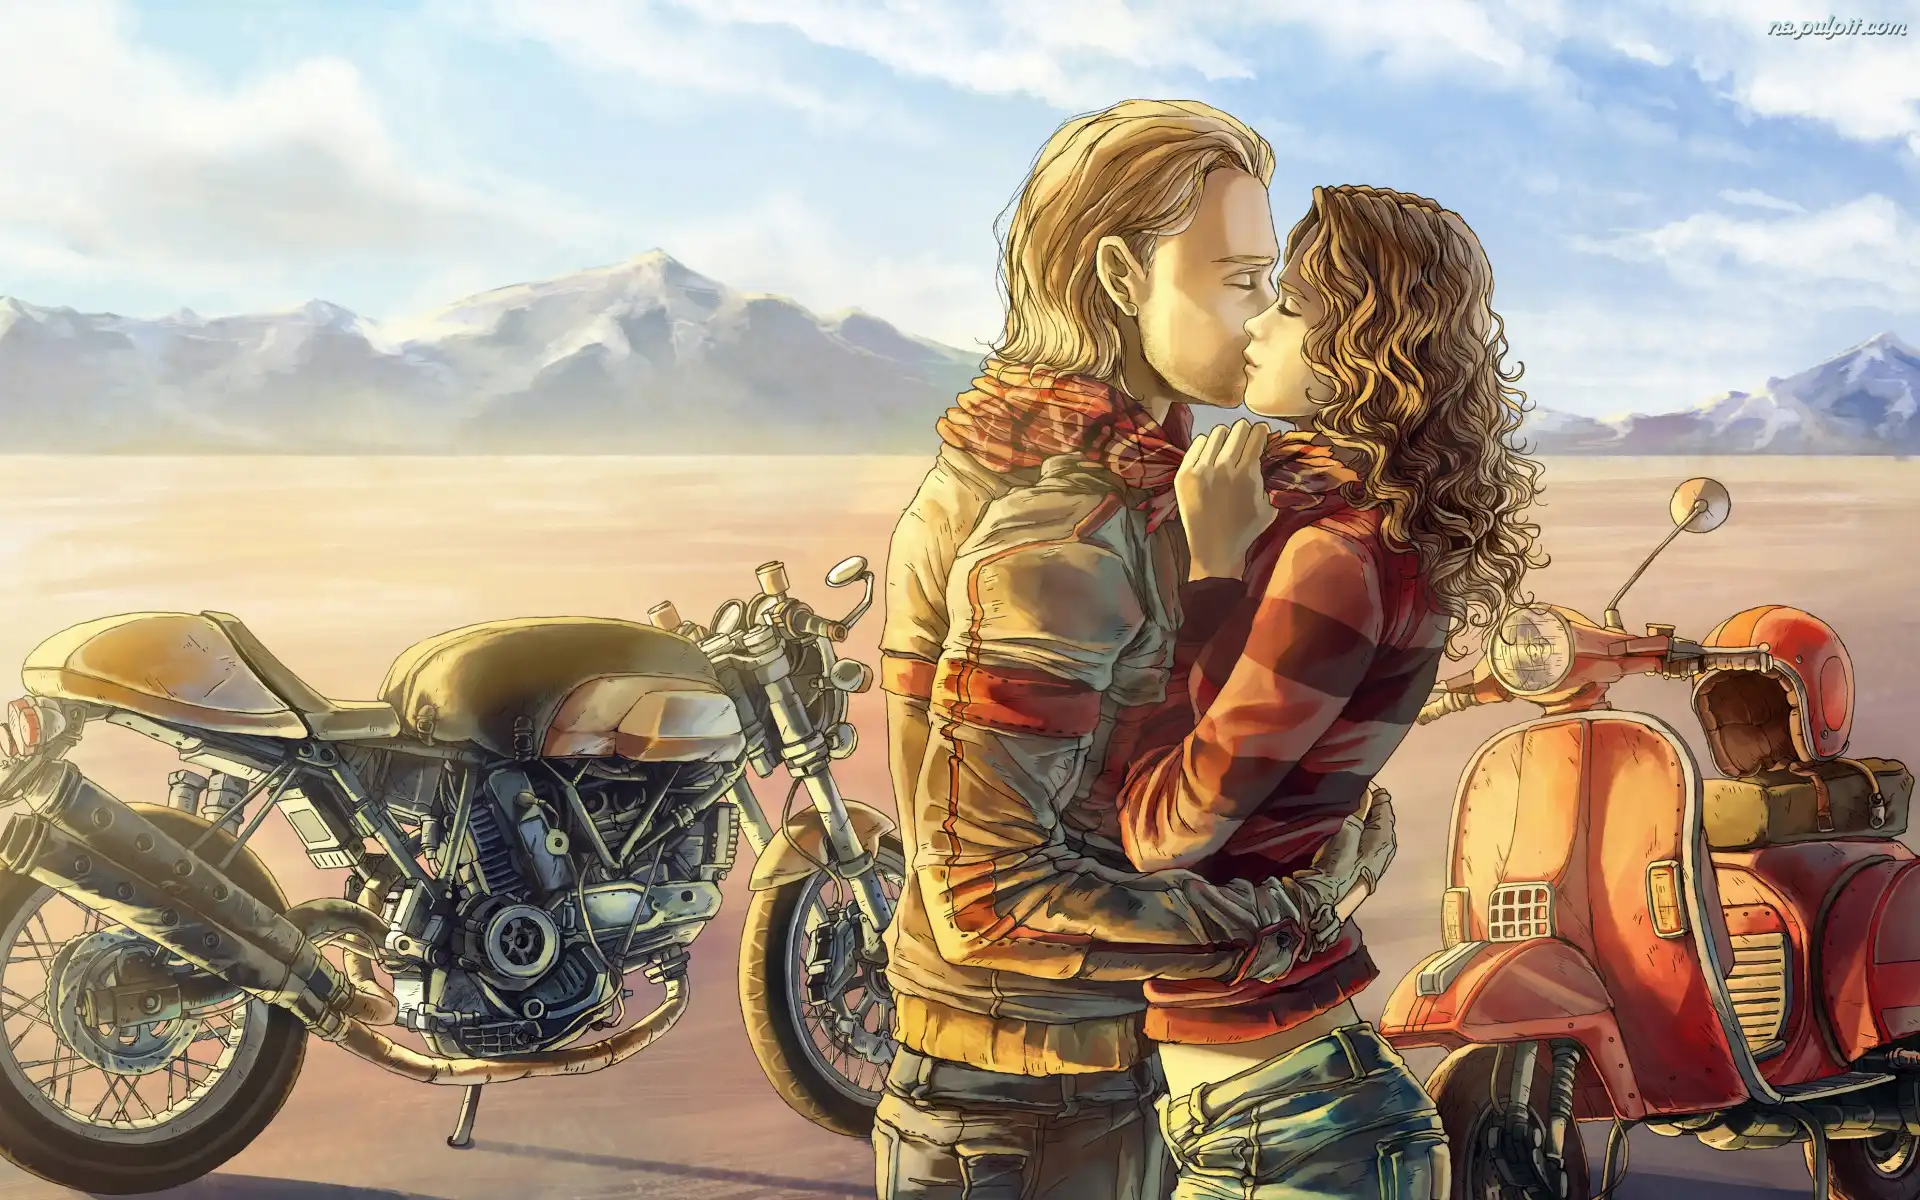 Motocykle, Miłosne, Zakochani